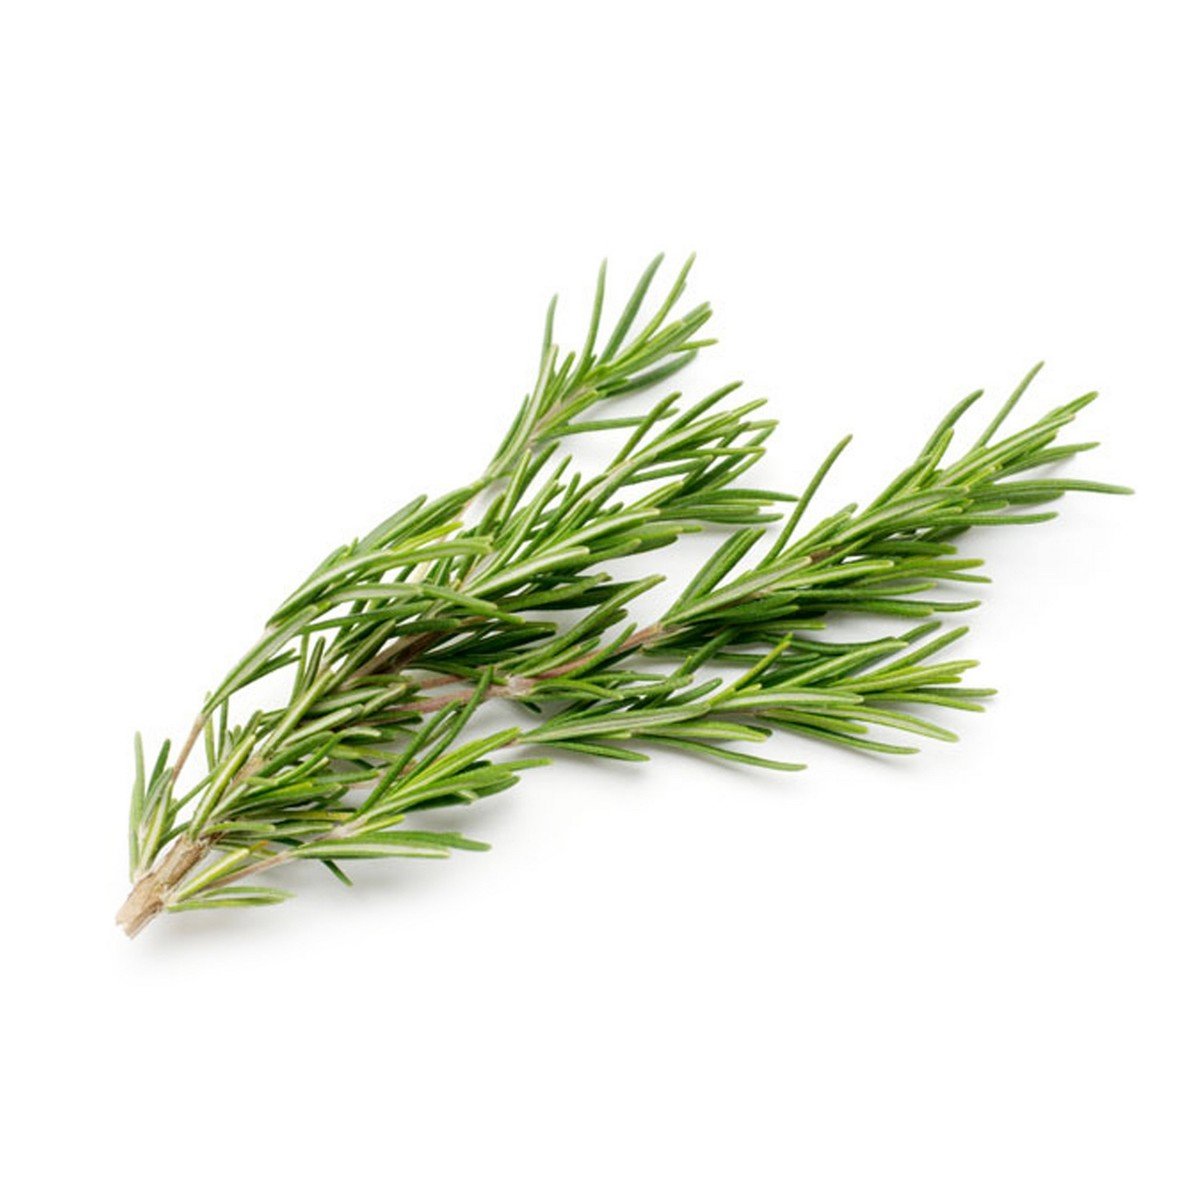 اشتري قم بشراء روزماري إيطالي 1 عبوة Online at Best Price من الموقع - من لولو هايبر ماركت Importd.Herbs/Leaves في السعودية